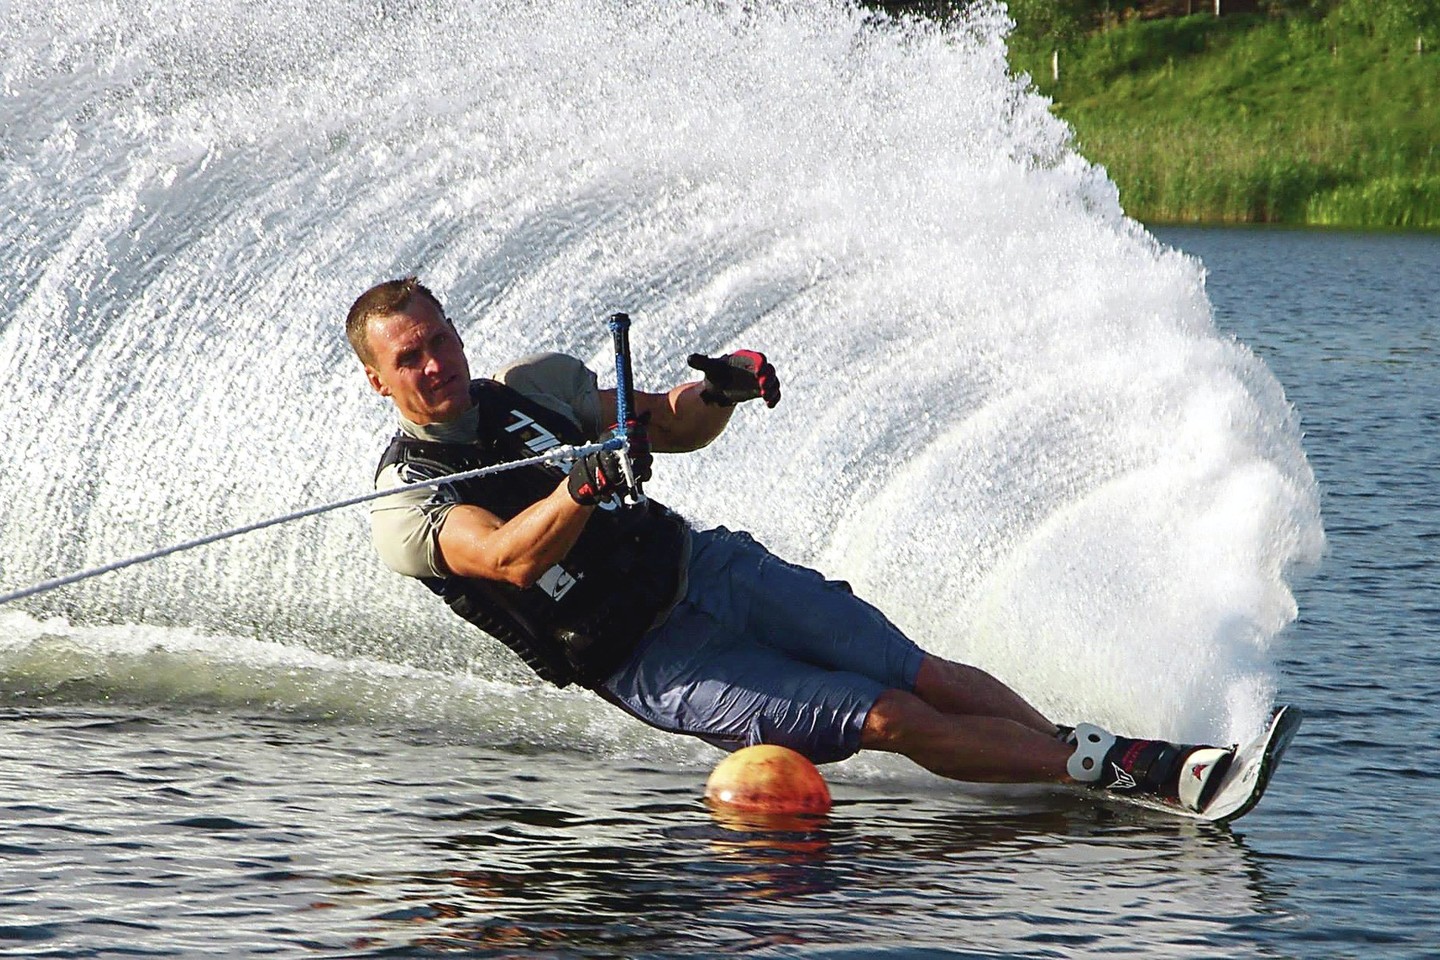 R.Lažinsko teigimu, vandens slidinėjimas – ideali sporto šaka: grynas oras, saulė, vanduo. Žmonės stiprėja fiziškai ir patiria puikių emocijų.<br>V.Balkūno nuotr.